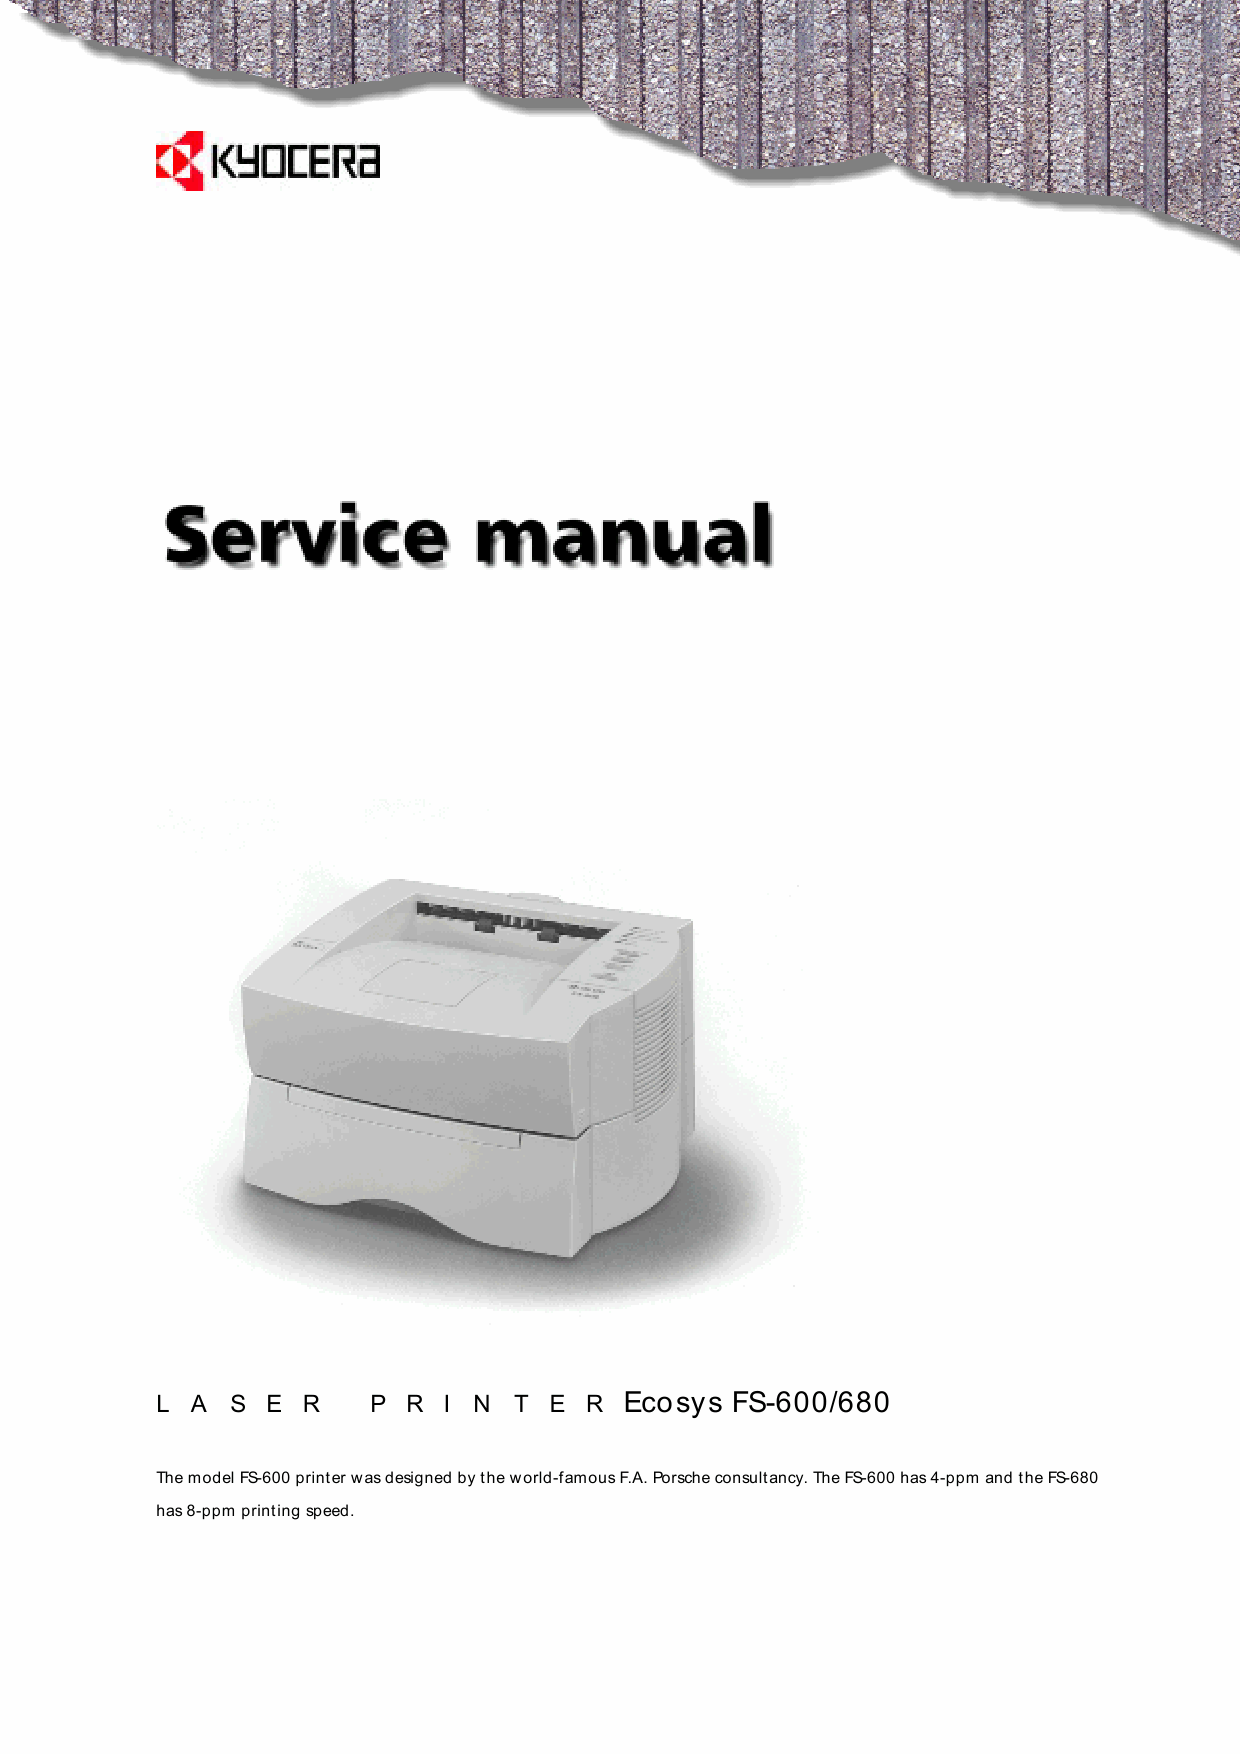 KYOCERA LaserPrinter FS-600 680 Parts and Service Manual-1